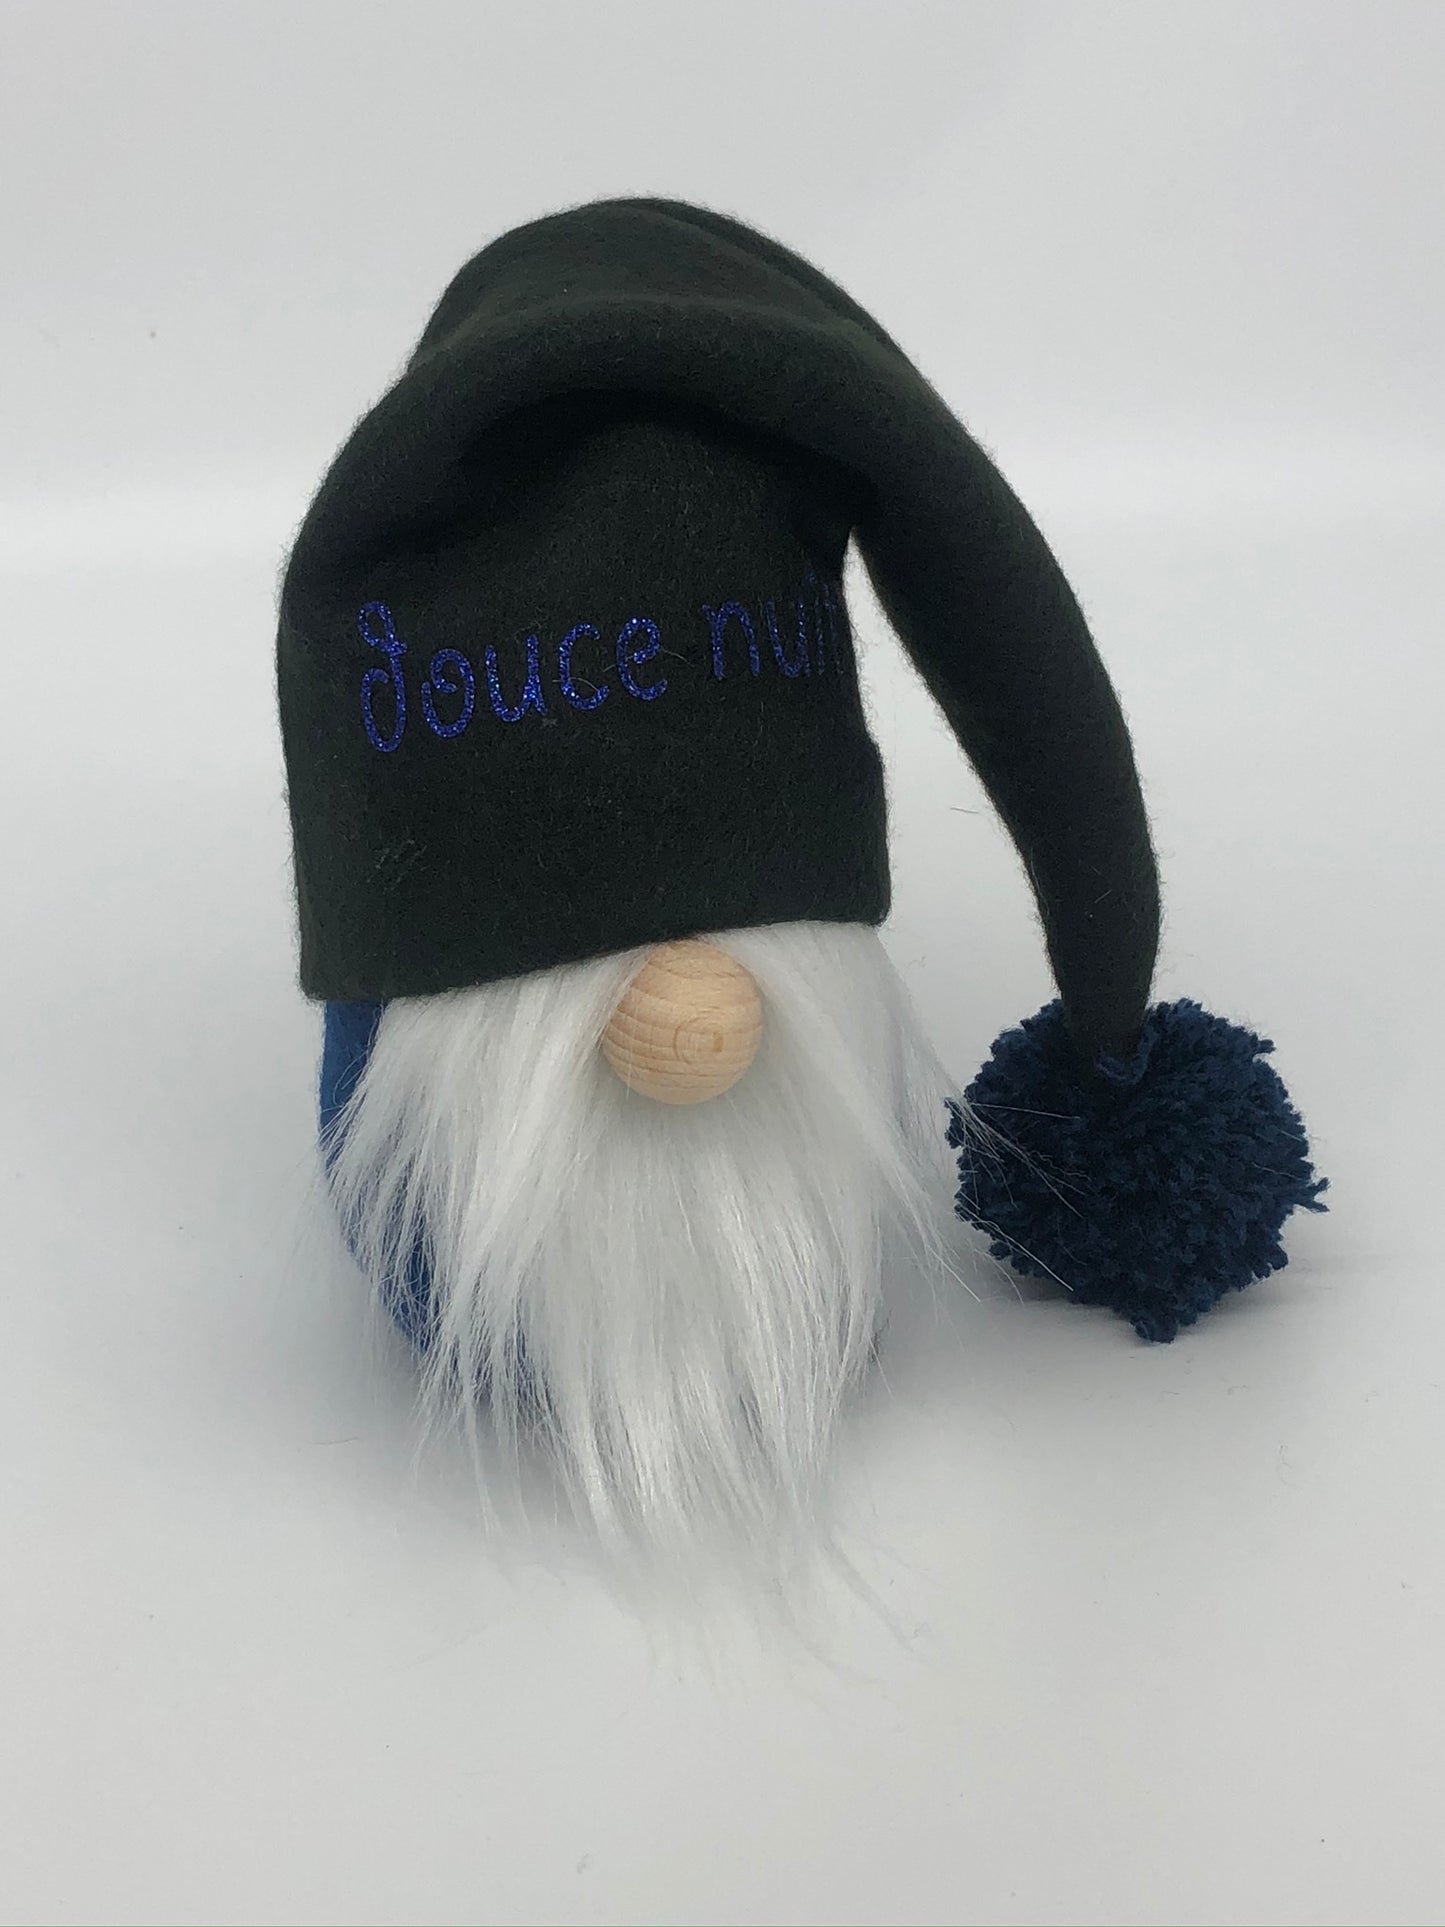 Gnome "Douce nuit" - gnome d'hiver - décoration et cadeaux